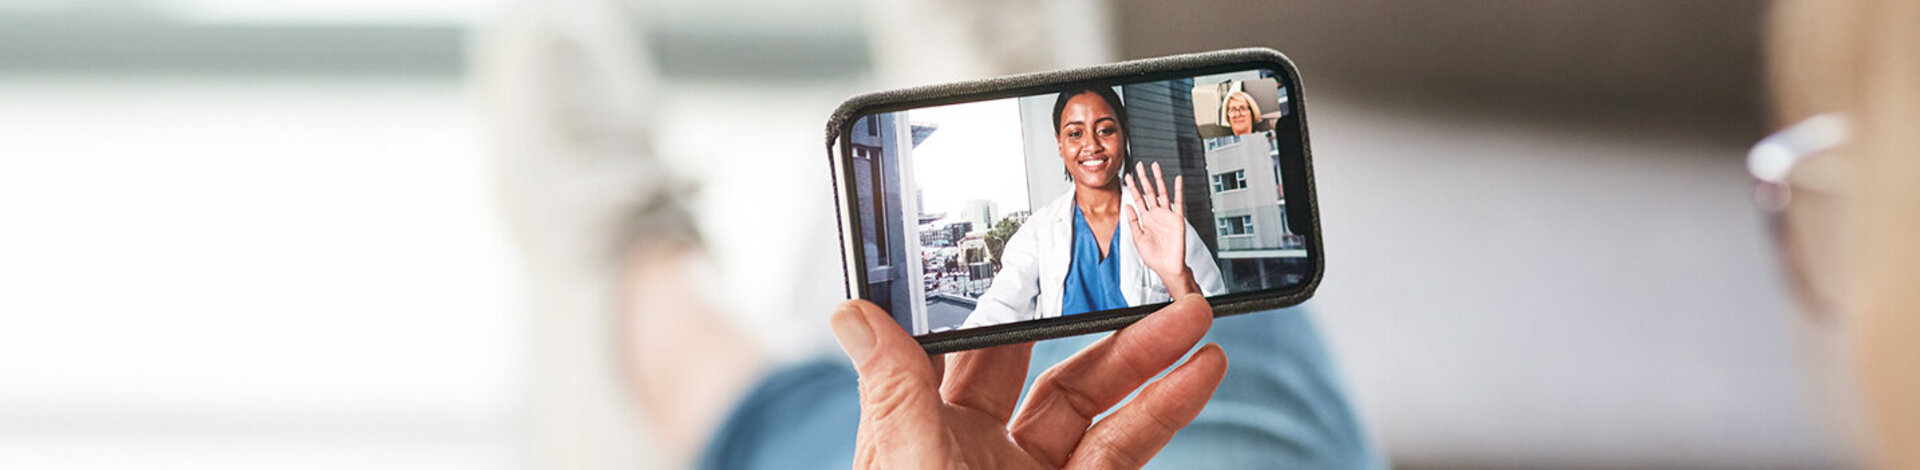 Eine Frau hält ein Handy in der Hand, auf dessen Bildschirm eine Frau in einem weißen Kittel zu sehen ist.